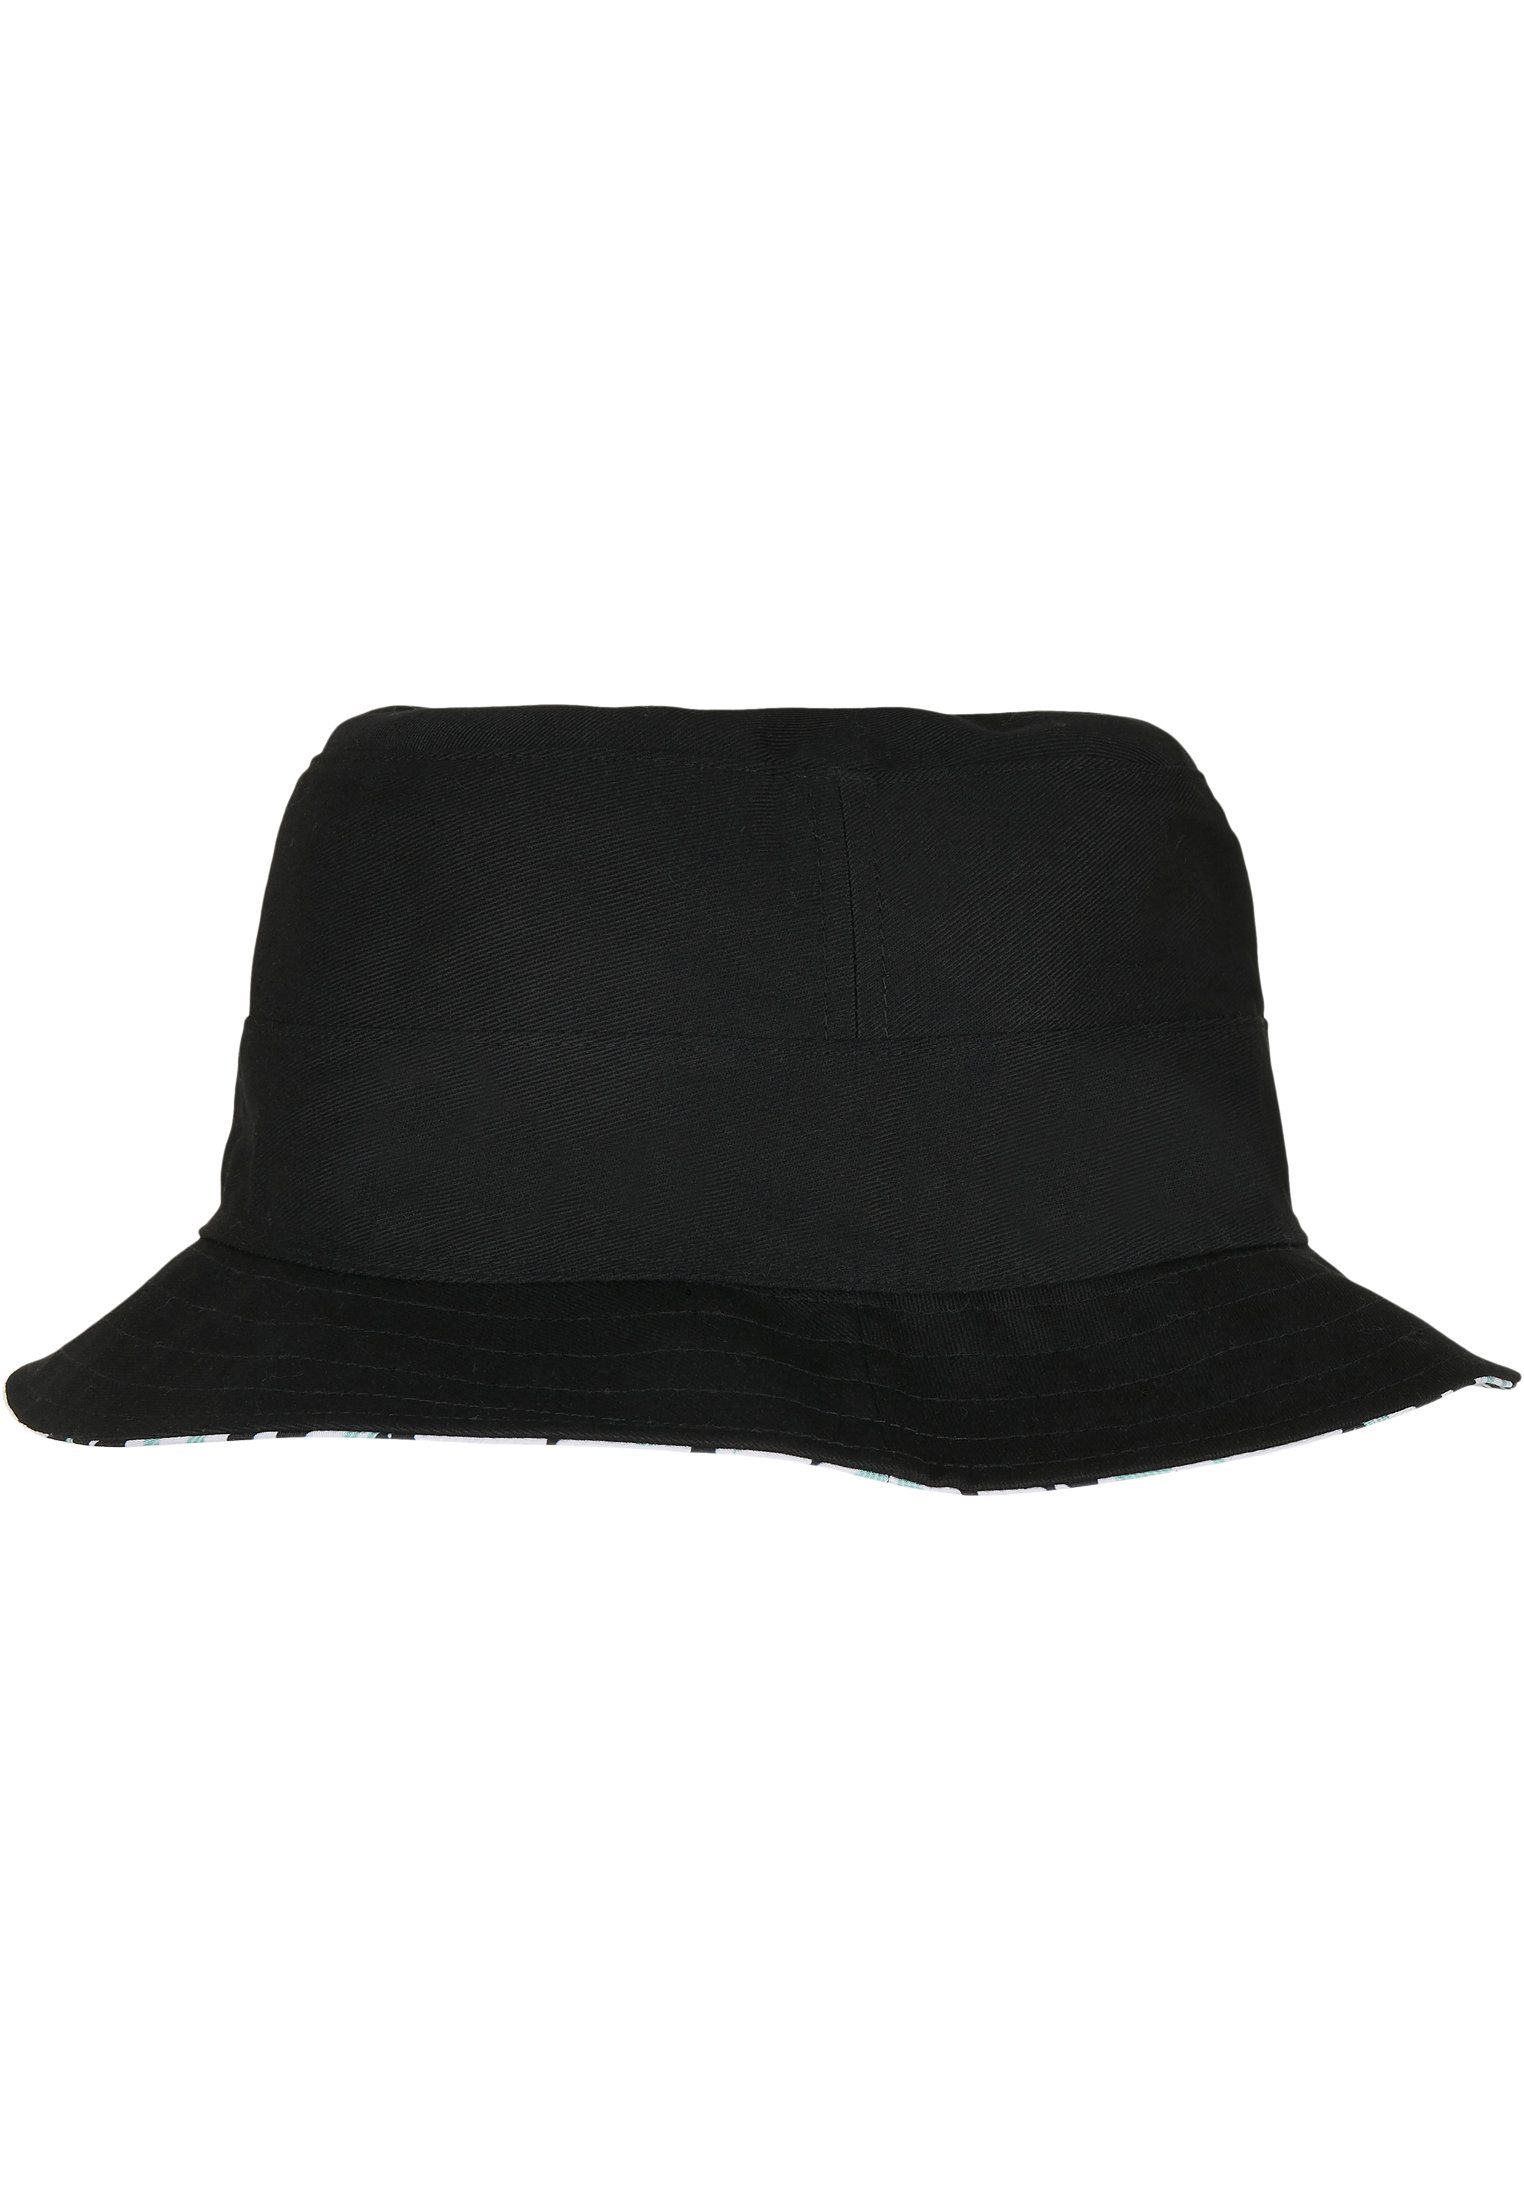 CAYLER & SONS Flex WL Aztec Summer Bucket Hat Reversible Cap C&S